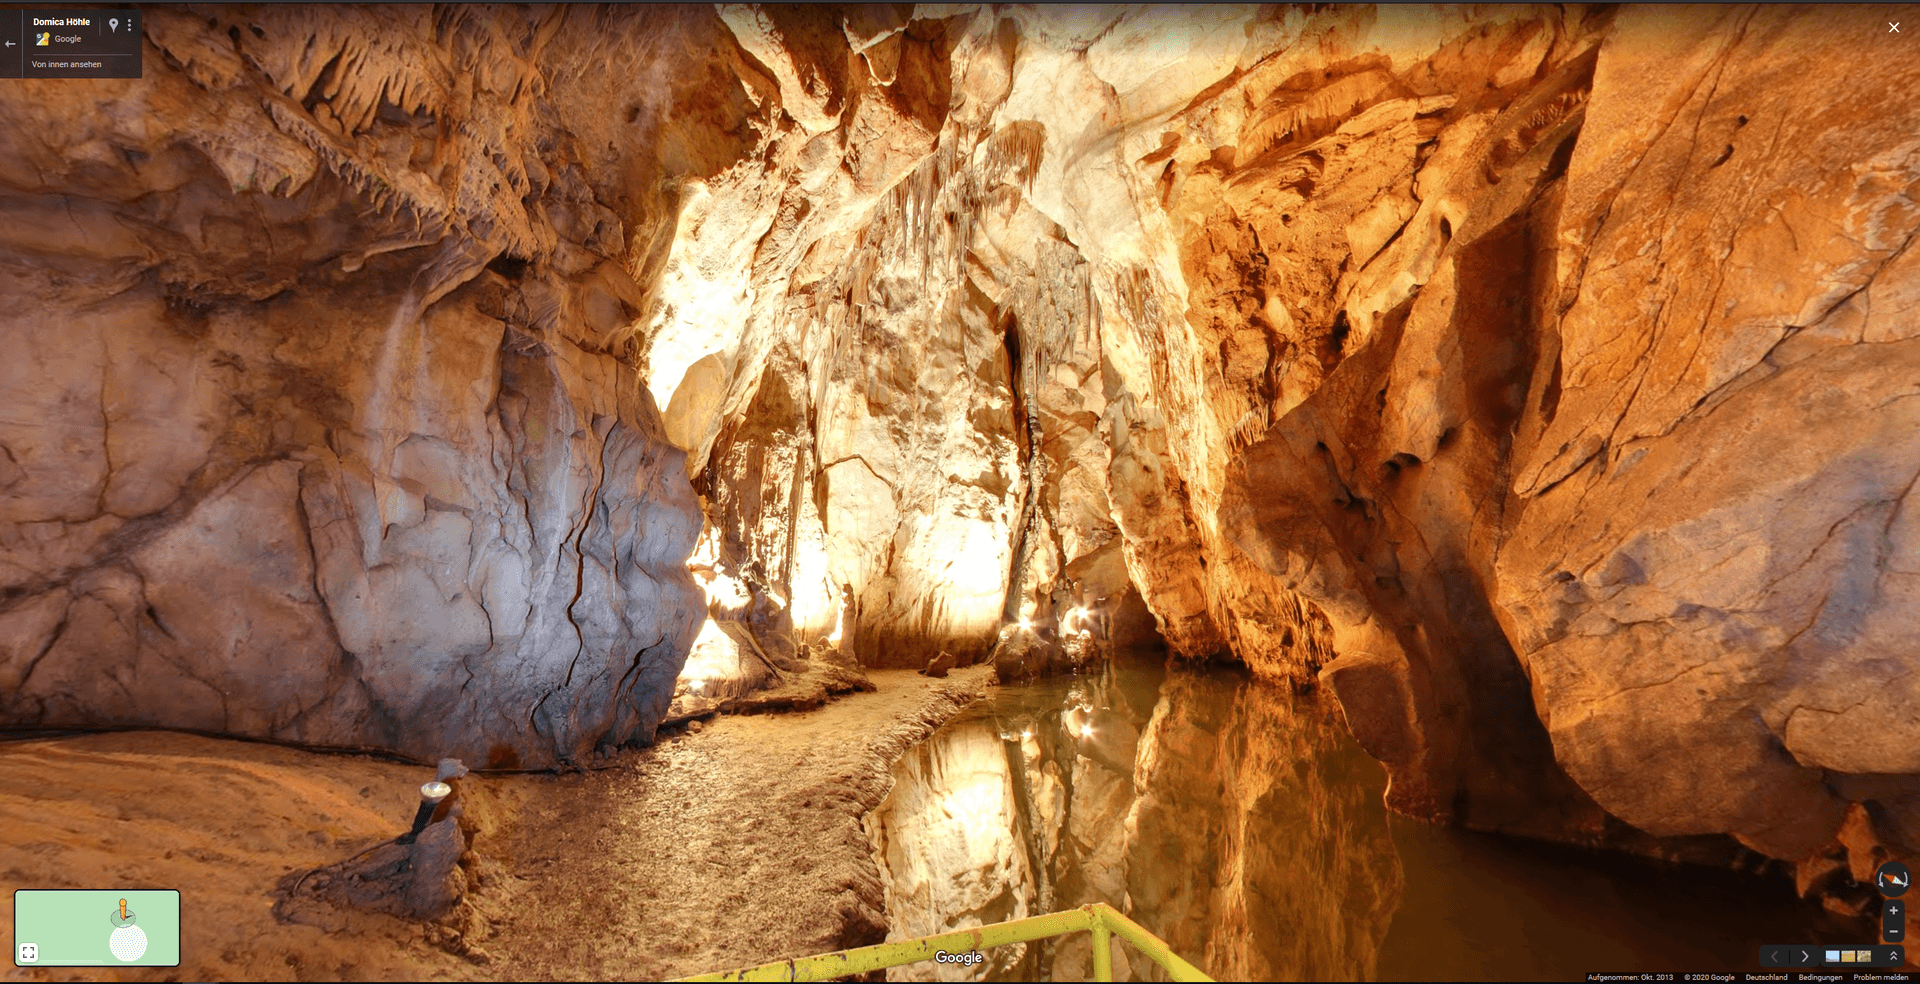 Die Domica Höhle befindet sich in der Slowakei. Archäologen fanden in der Tropfsteinhöhle Objekte aus der Steinzeit. Mit Google Maps lässt sich die Höhle erkunden. Welche weiteren Easter Eggs der Kartendienst bereithält, finden Sie in der Fotoshow.